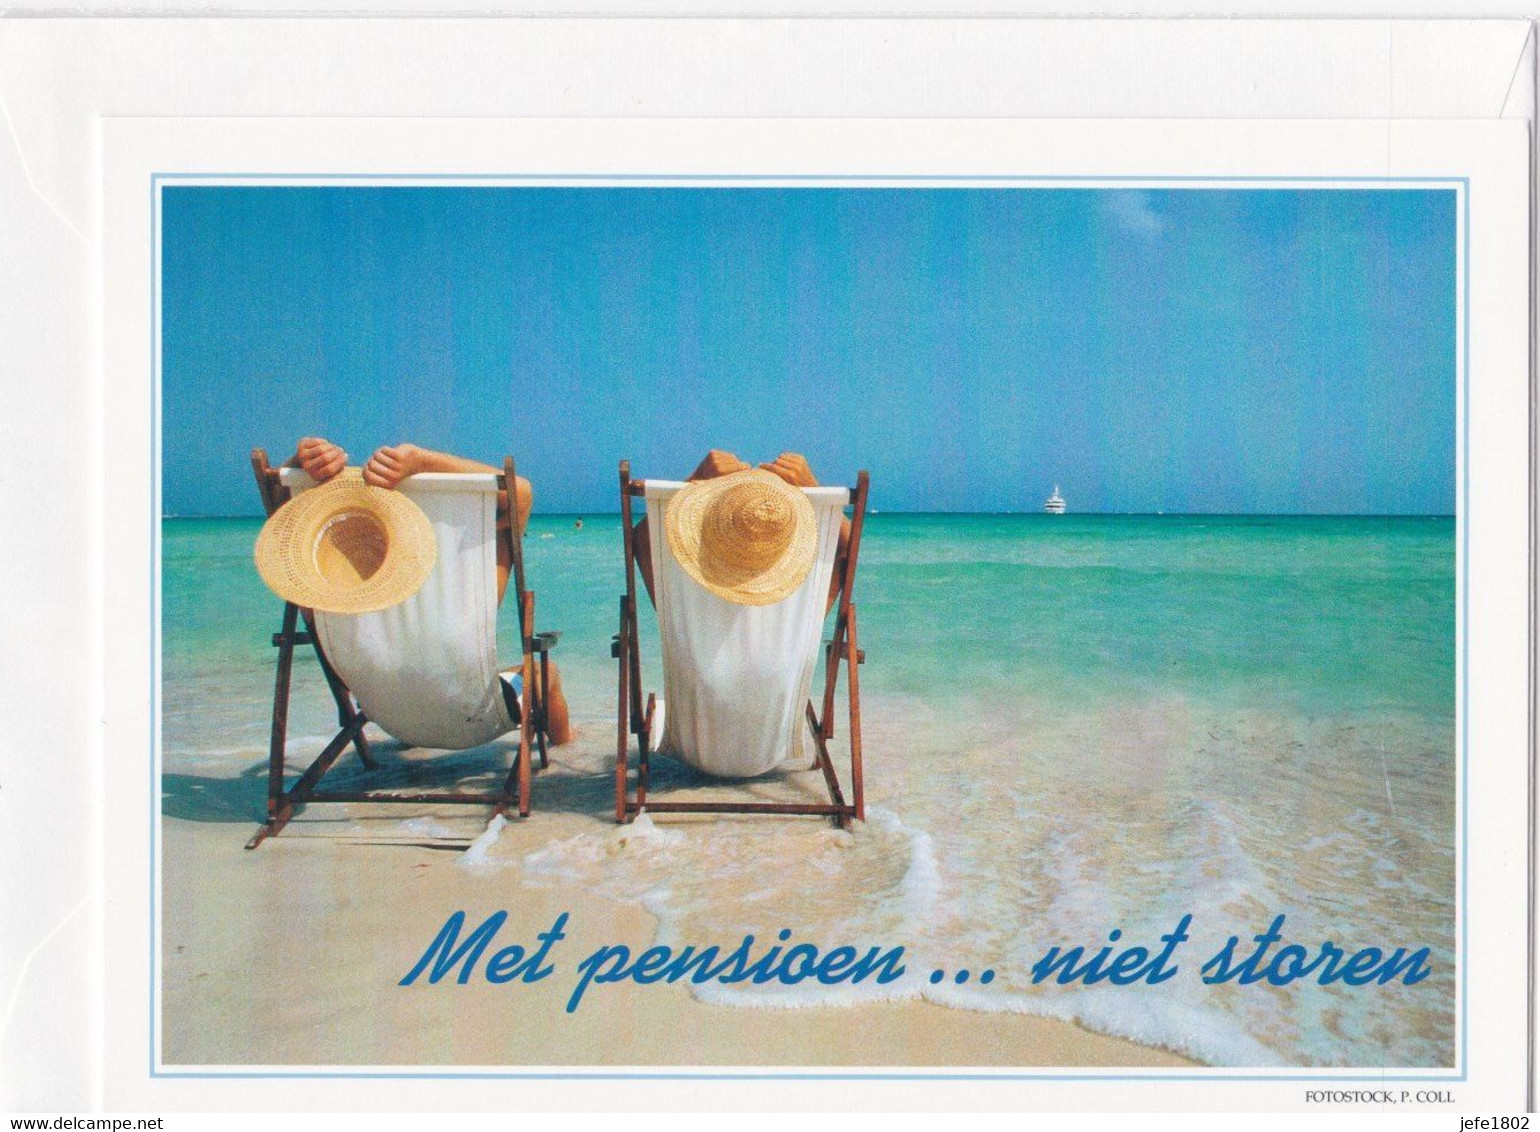 Postogram 103 N / 96 - Met Pensioen ... Niet Storen - P. Coll, Fotostock - On Pension ... Don't Disturb - Postogram